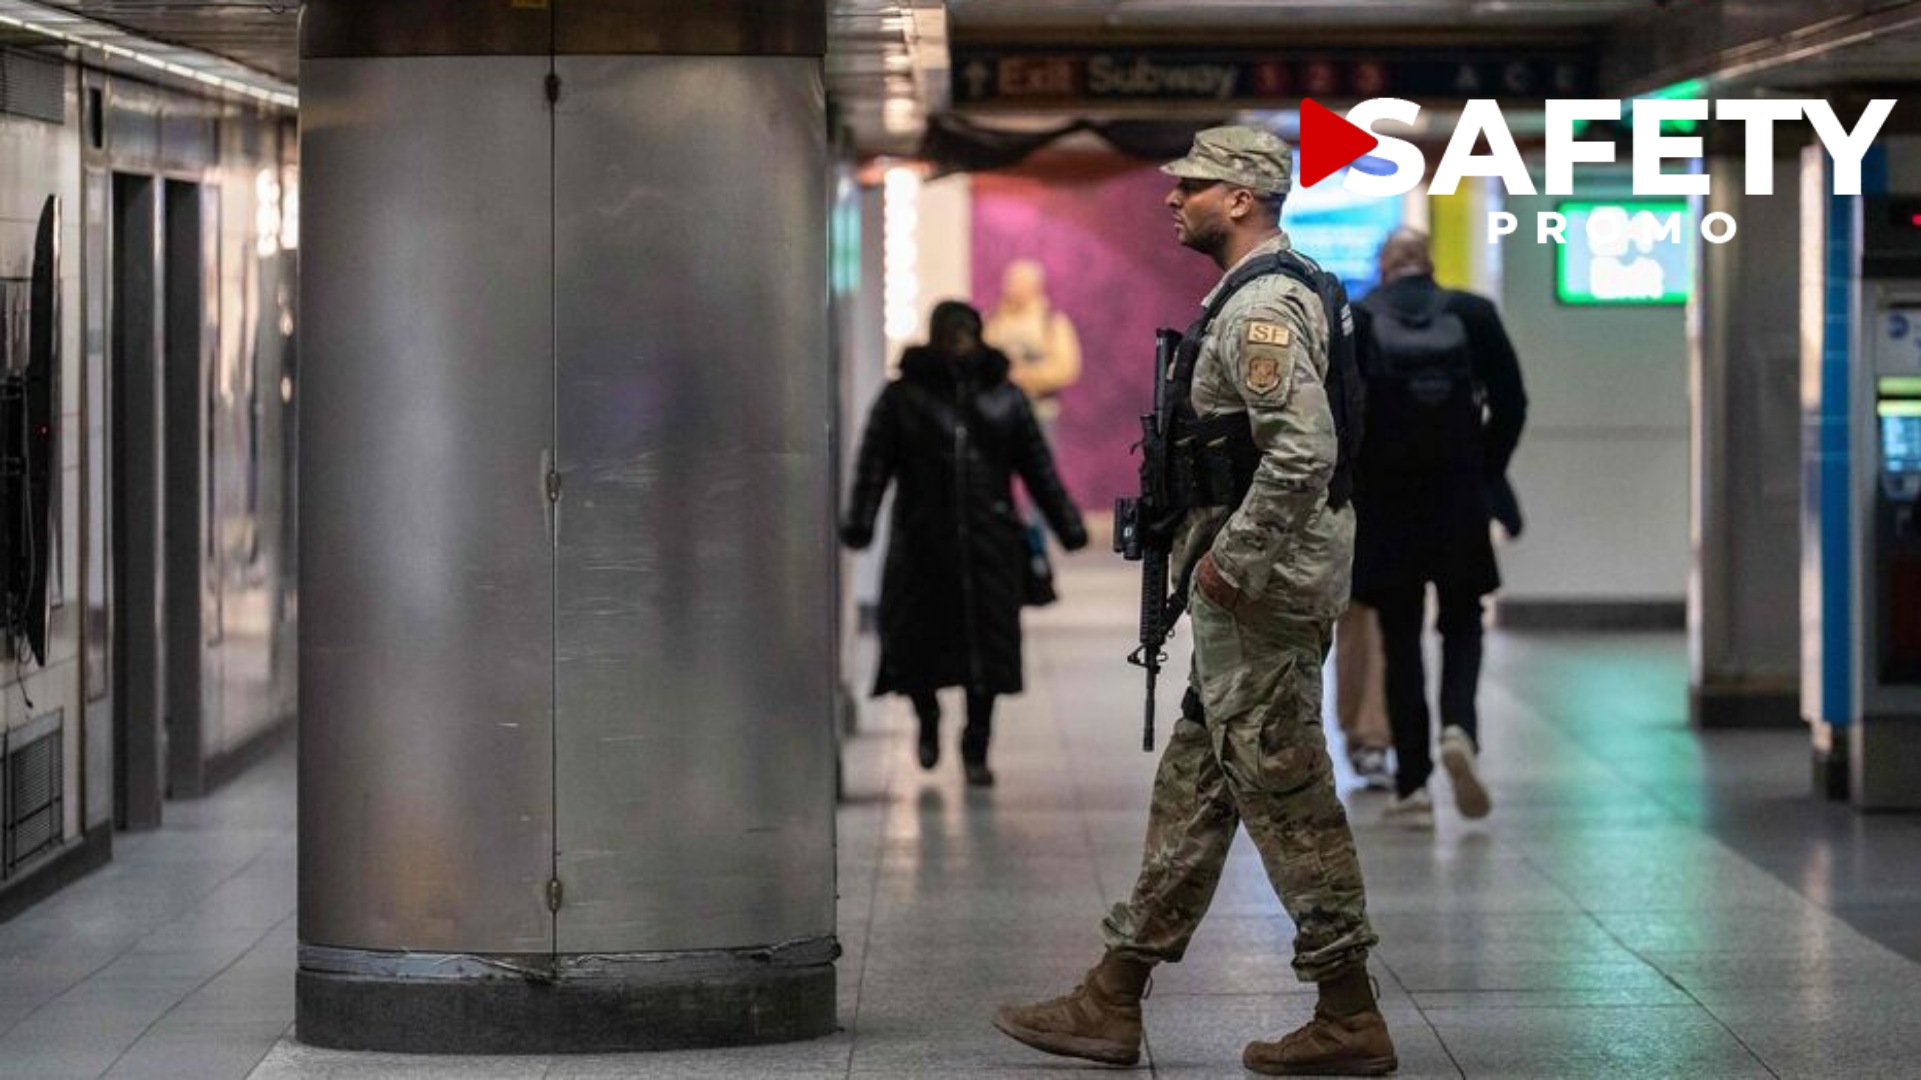 Après une série de violents incidents, la ville de New-York va déployer des militaires dans le métro